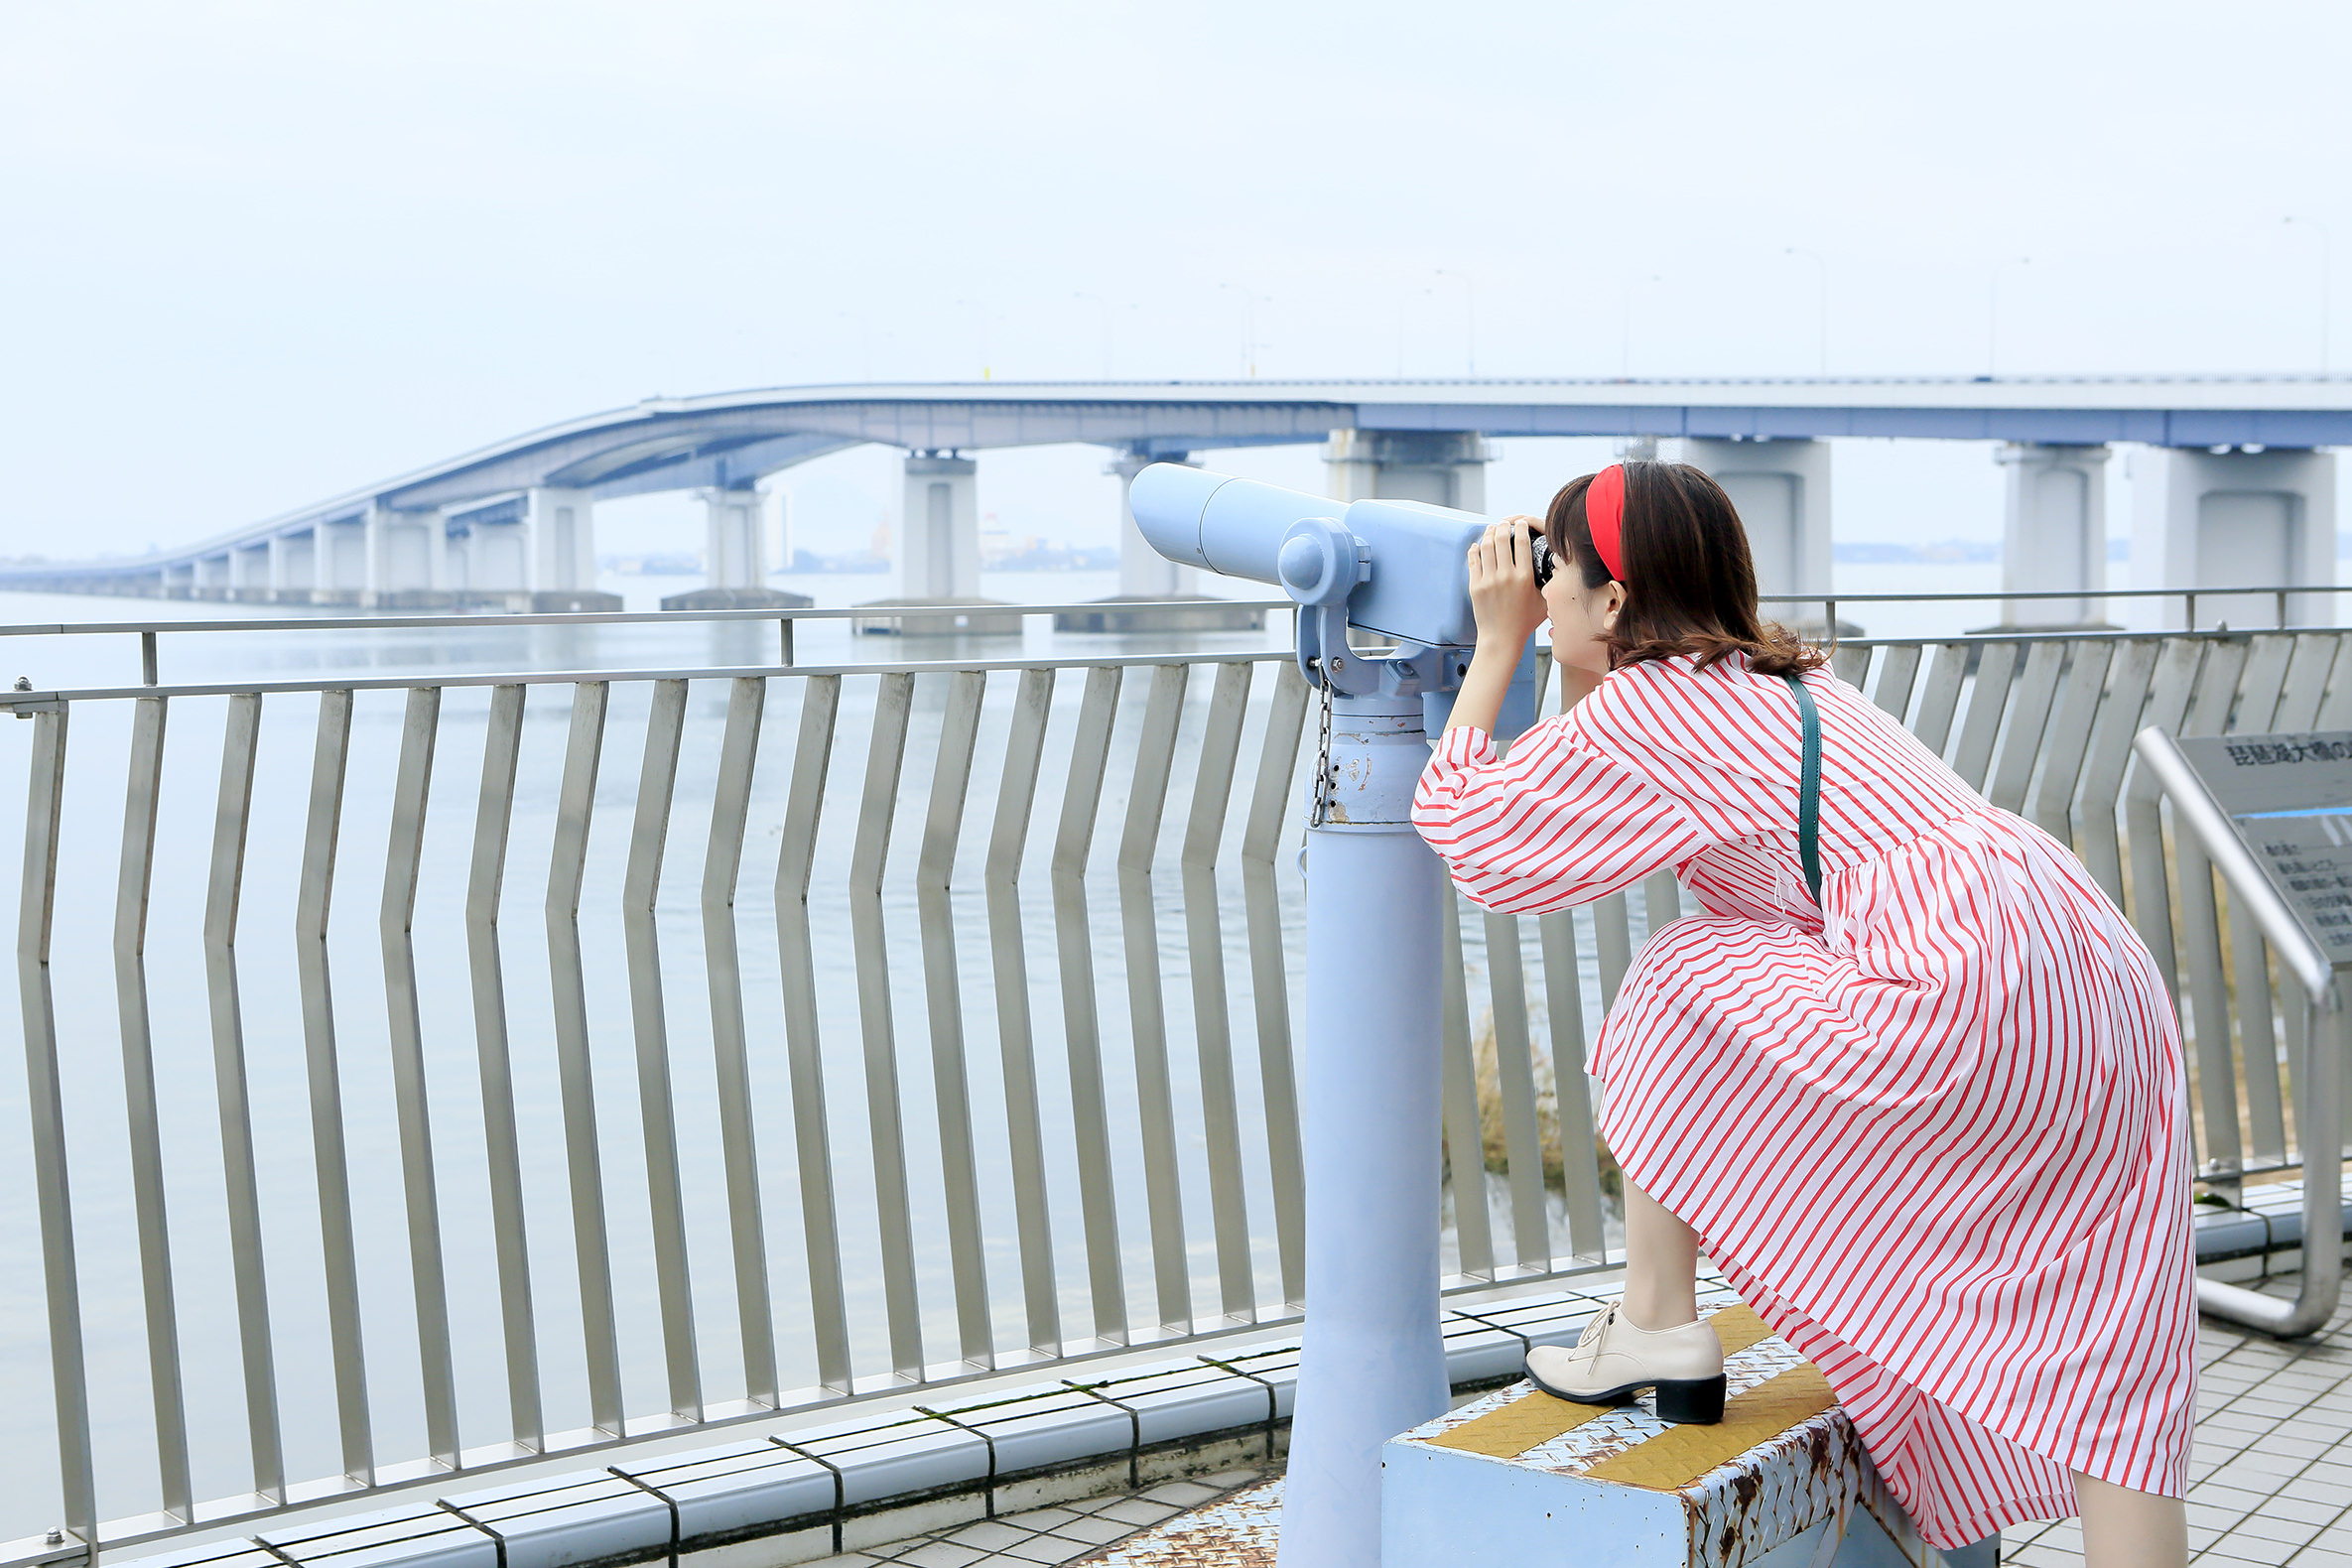 琵琶湖大橋さんの西側にある道の駅「米プラザ」2階の展望台から。曲線を描く美しい橋の姿を望遠レンズでじっくりと眺めることができます。